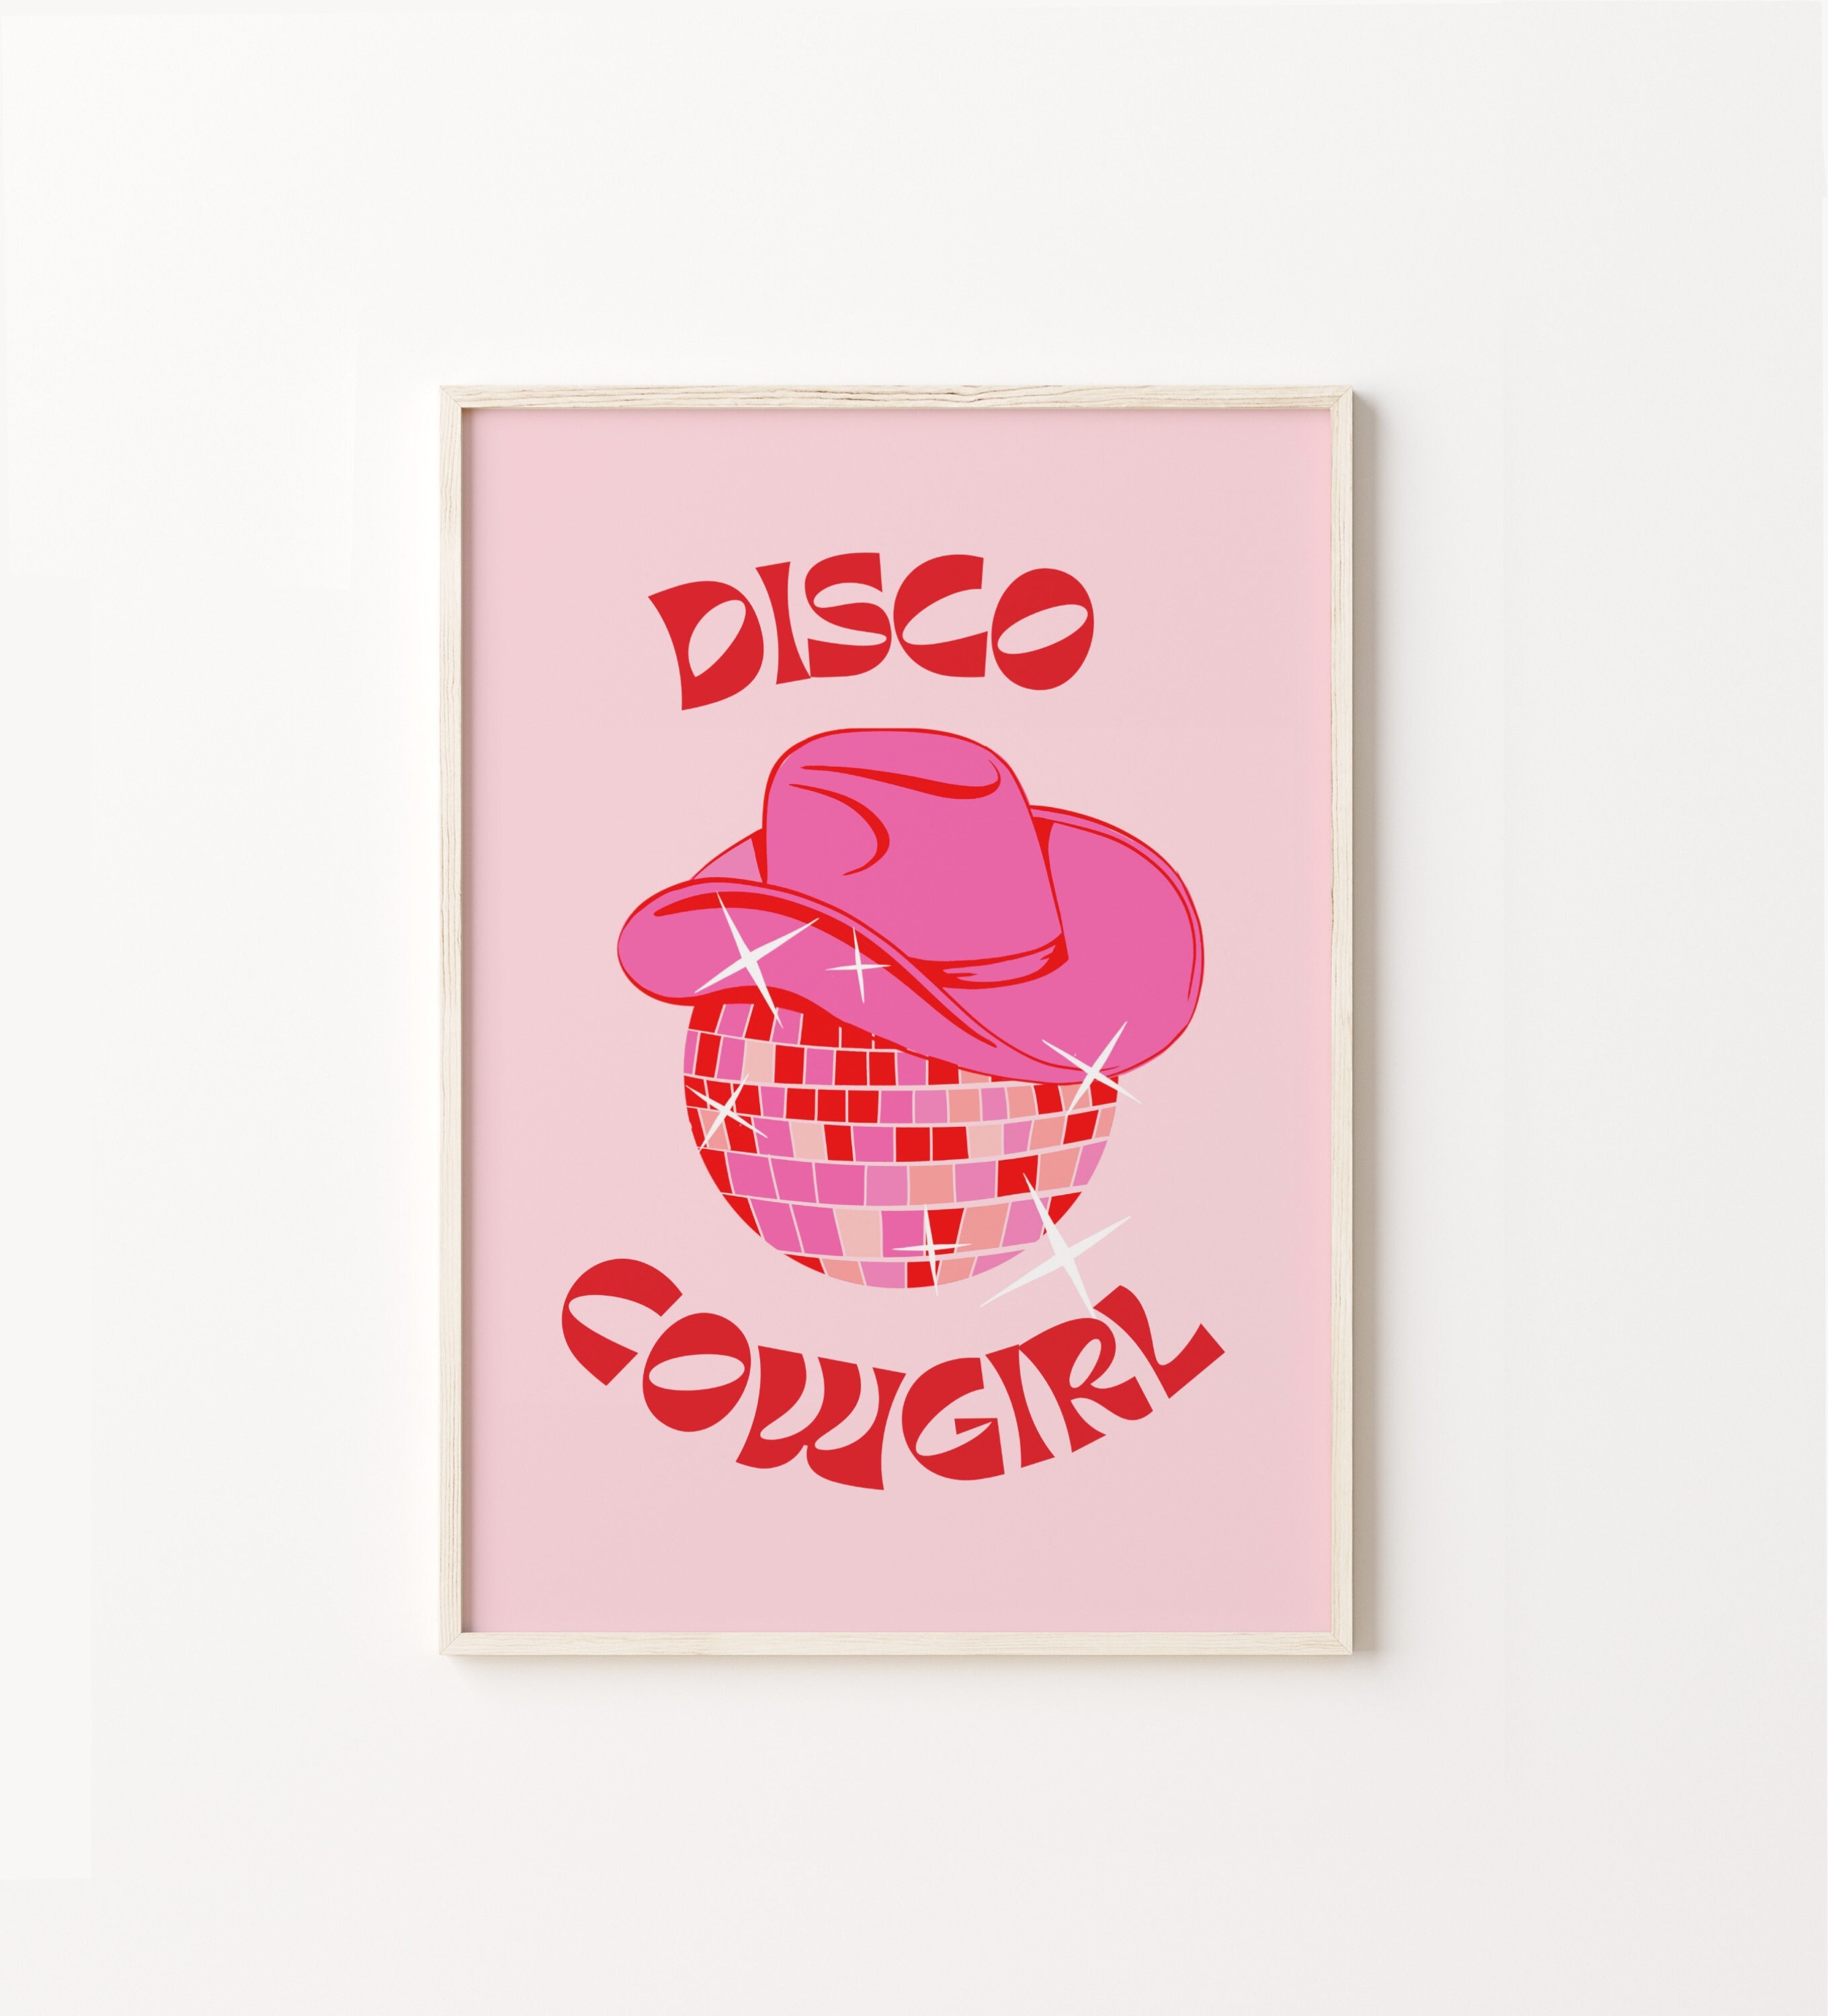 Disco Cowgirl Einladung Printable Disco Ball Cowboyhut Geburtstagsparty  einladen Anpassbare Pink Space Let's Go Girls Decor 0088 - .de